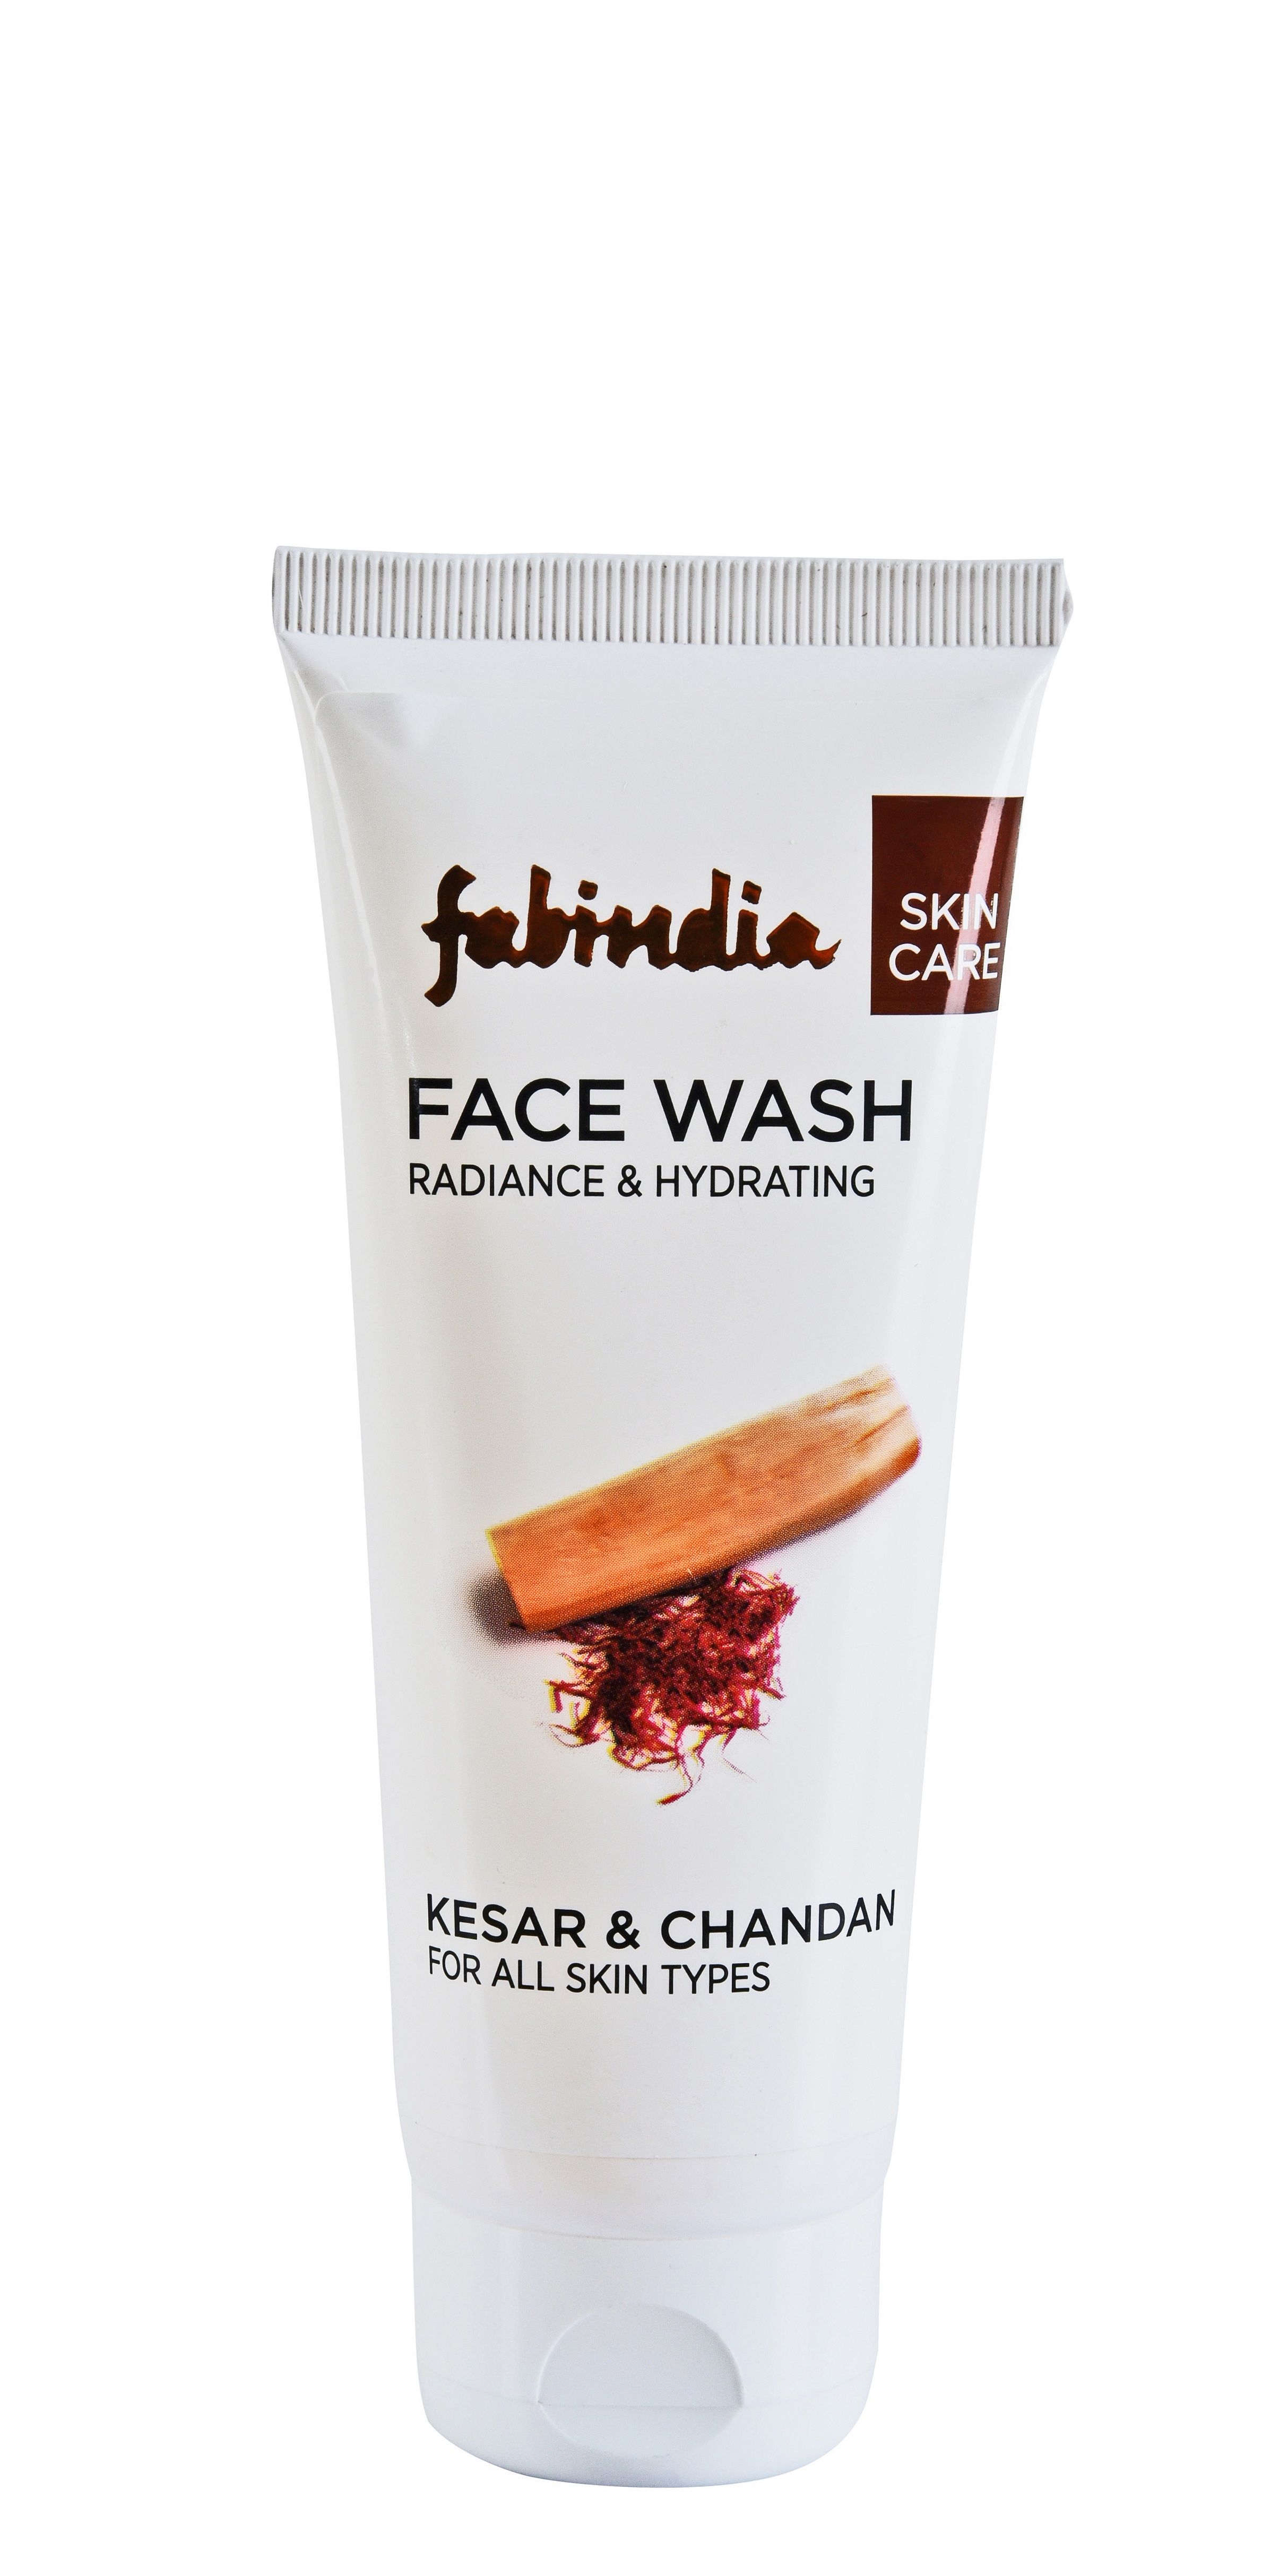 Fabindia Kesar & Chandan Face Wash